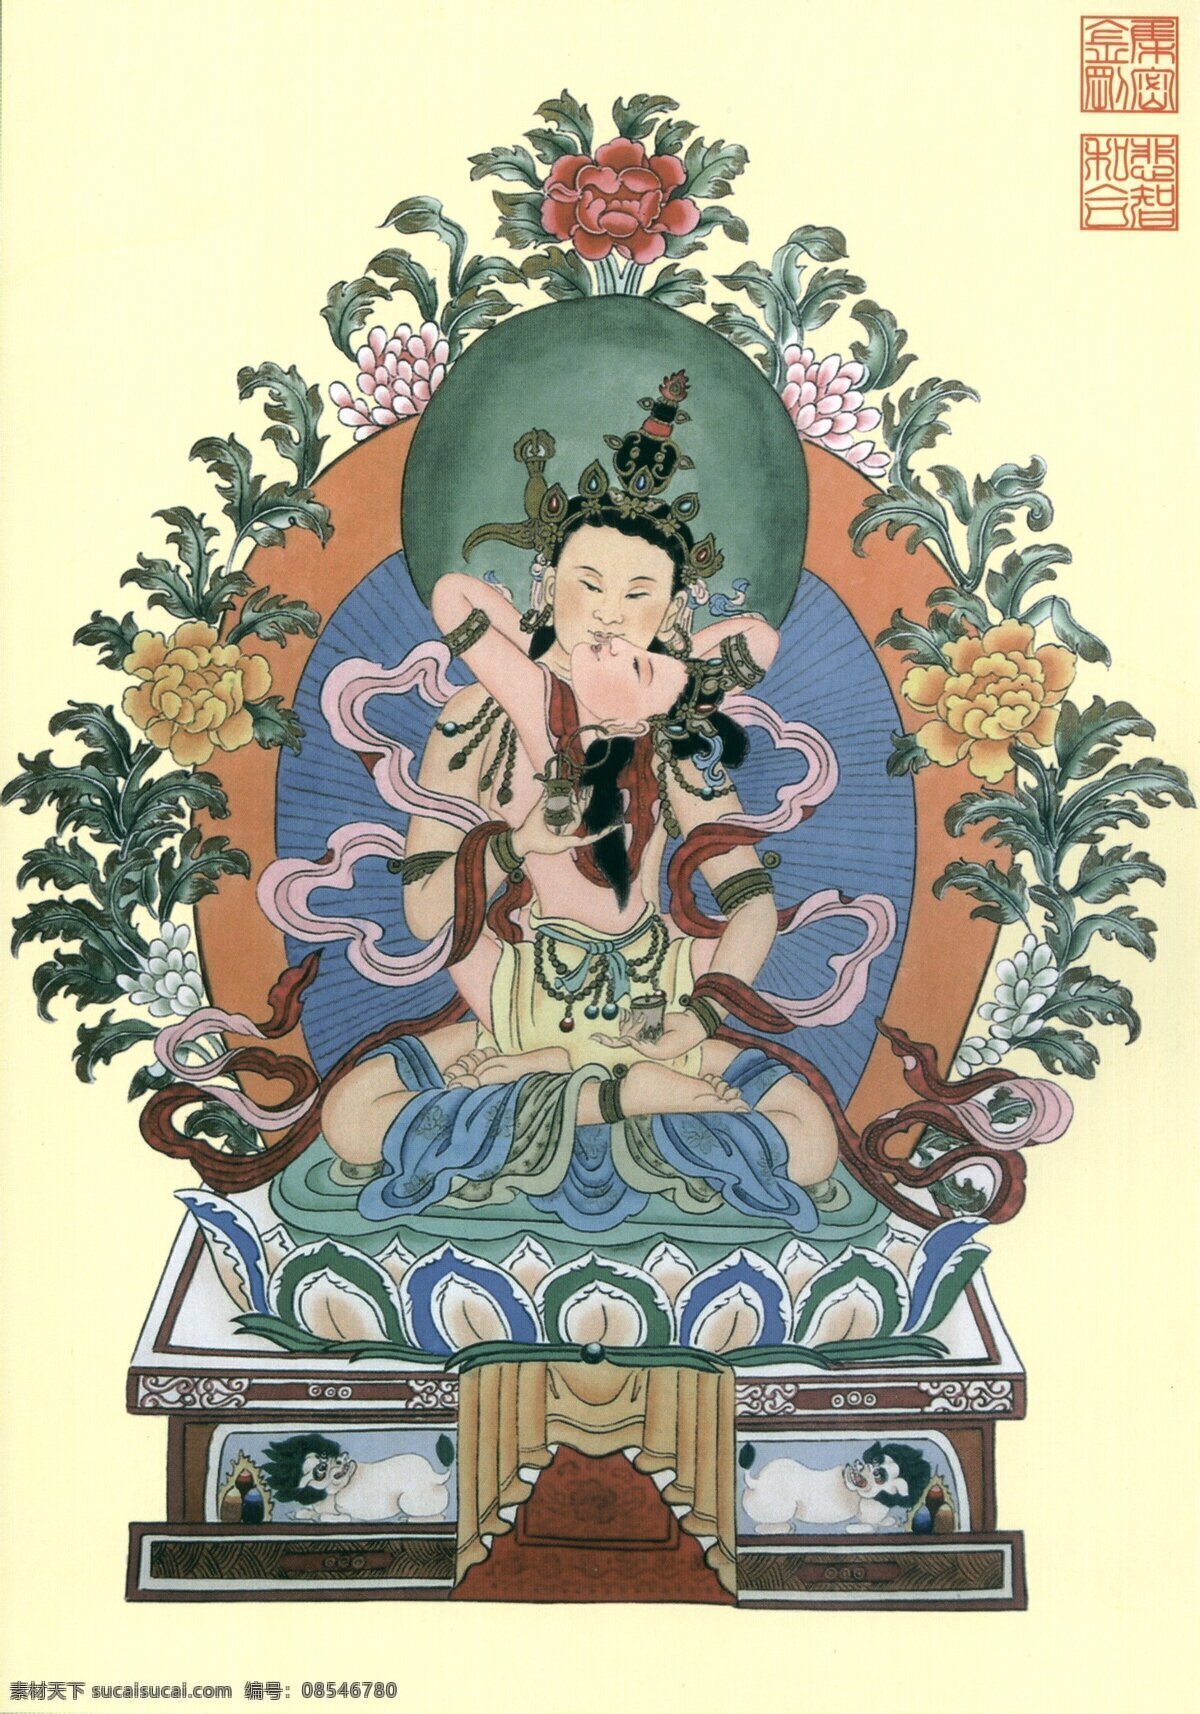 集密金刚 金刚 藏传佛教 宗教信仰 宗教艺术 唐卡 文化艺术